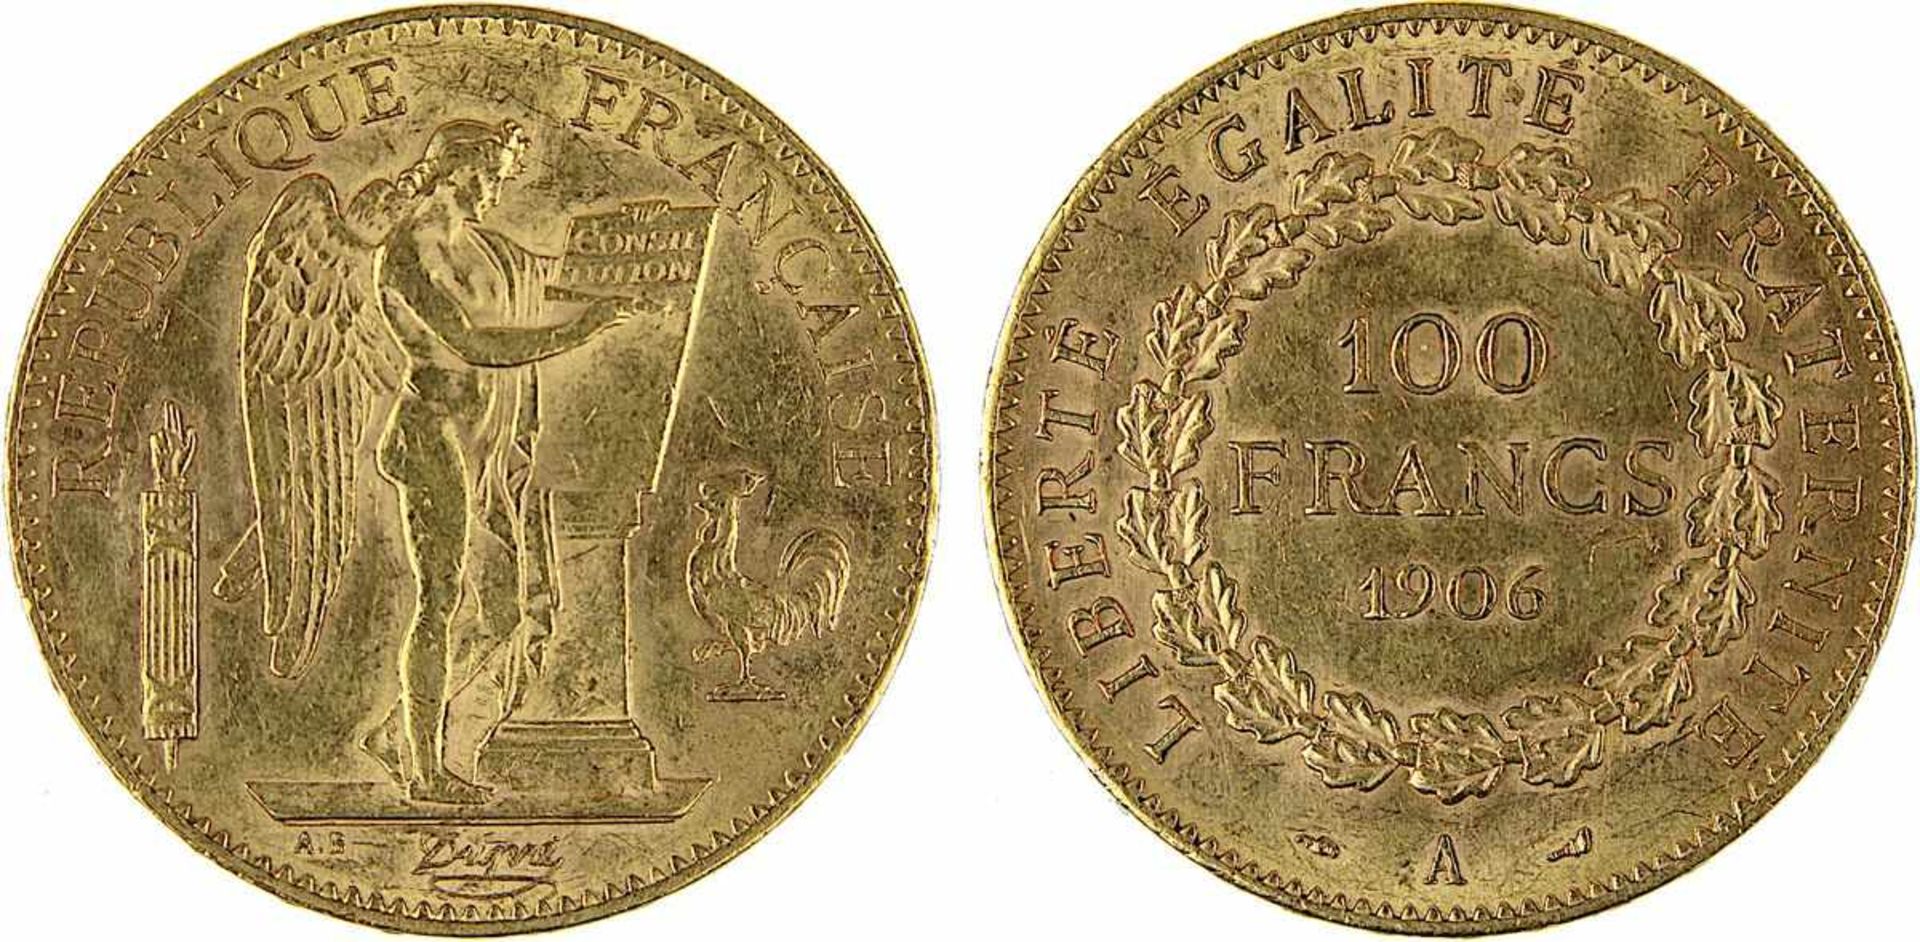 Goldmünze zu 100 Francs, Frankreich 1906, A für Paris, 900er Gold, 32,2 g, Erhaltung sehr schön,